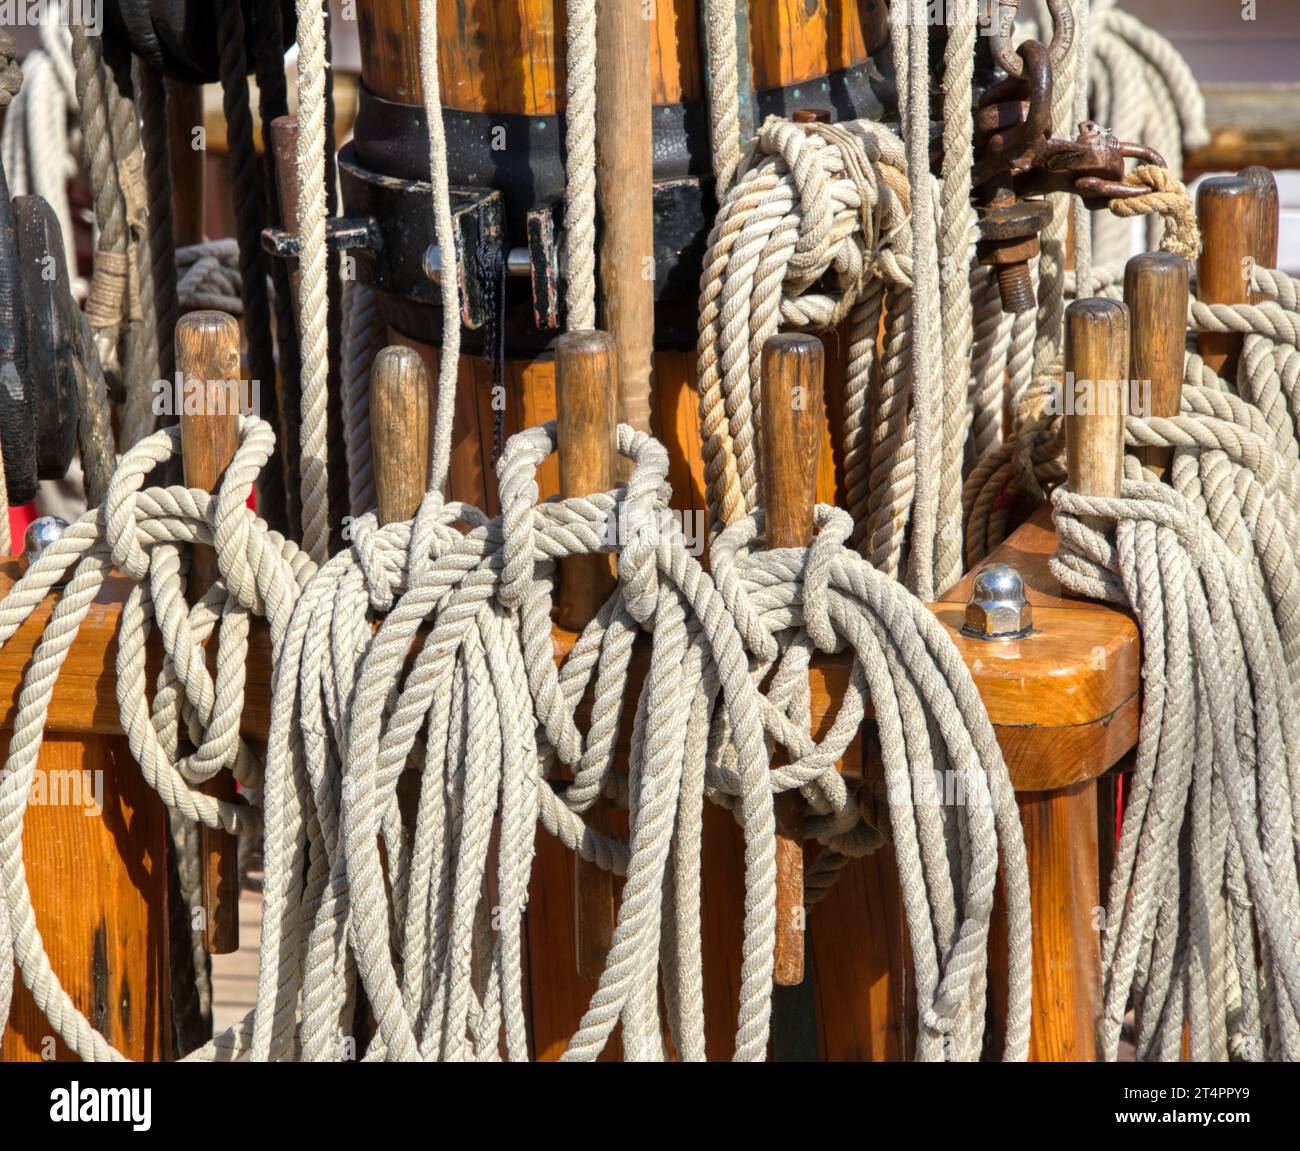 L'accent est mis sur les différentes cordes, nœuds et poulies d'un voilier Banque D'Images